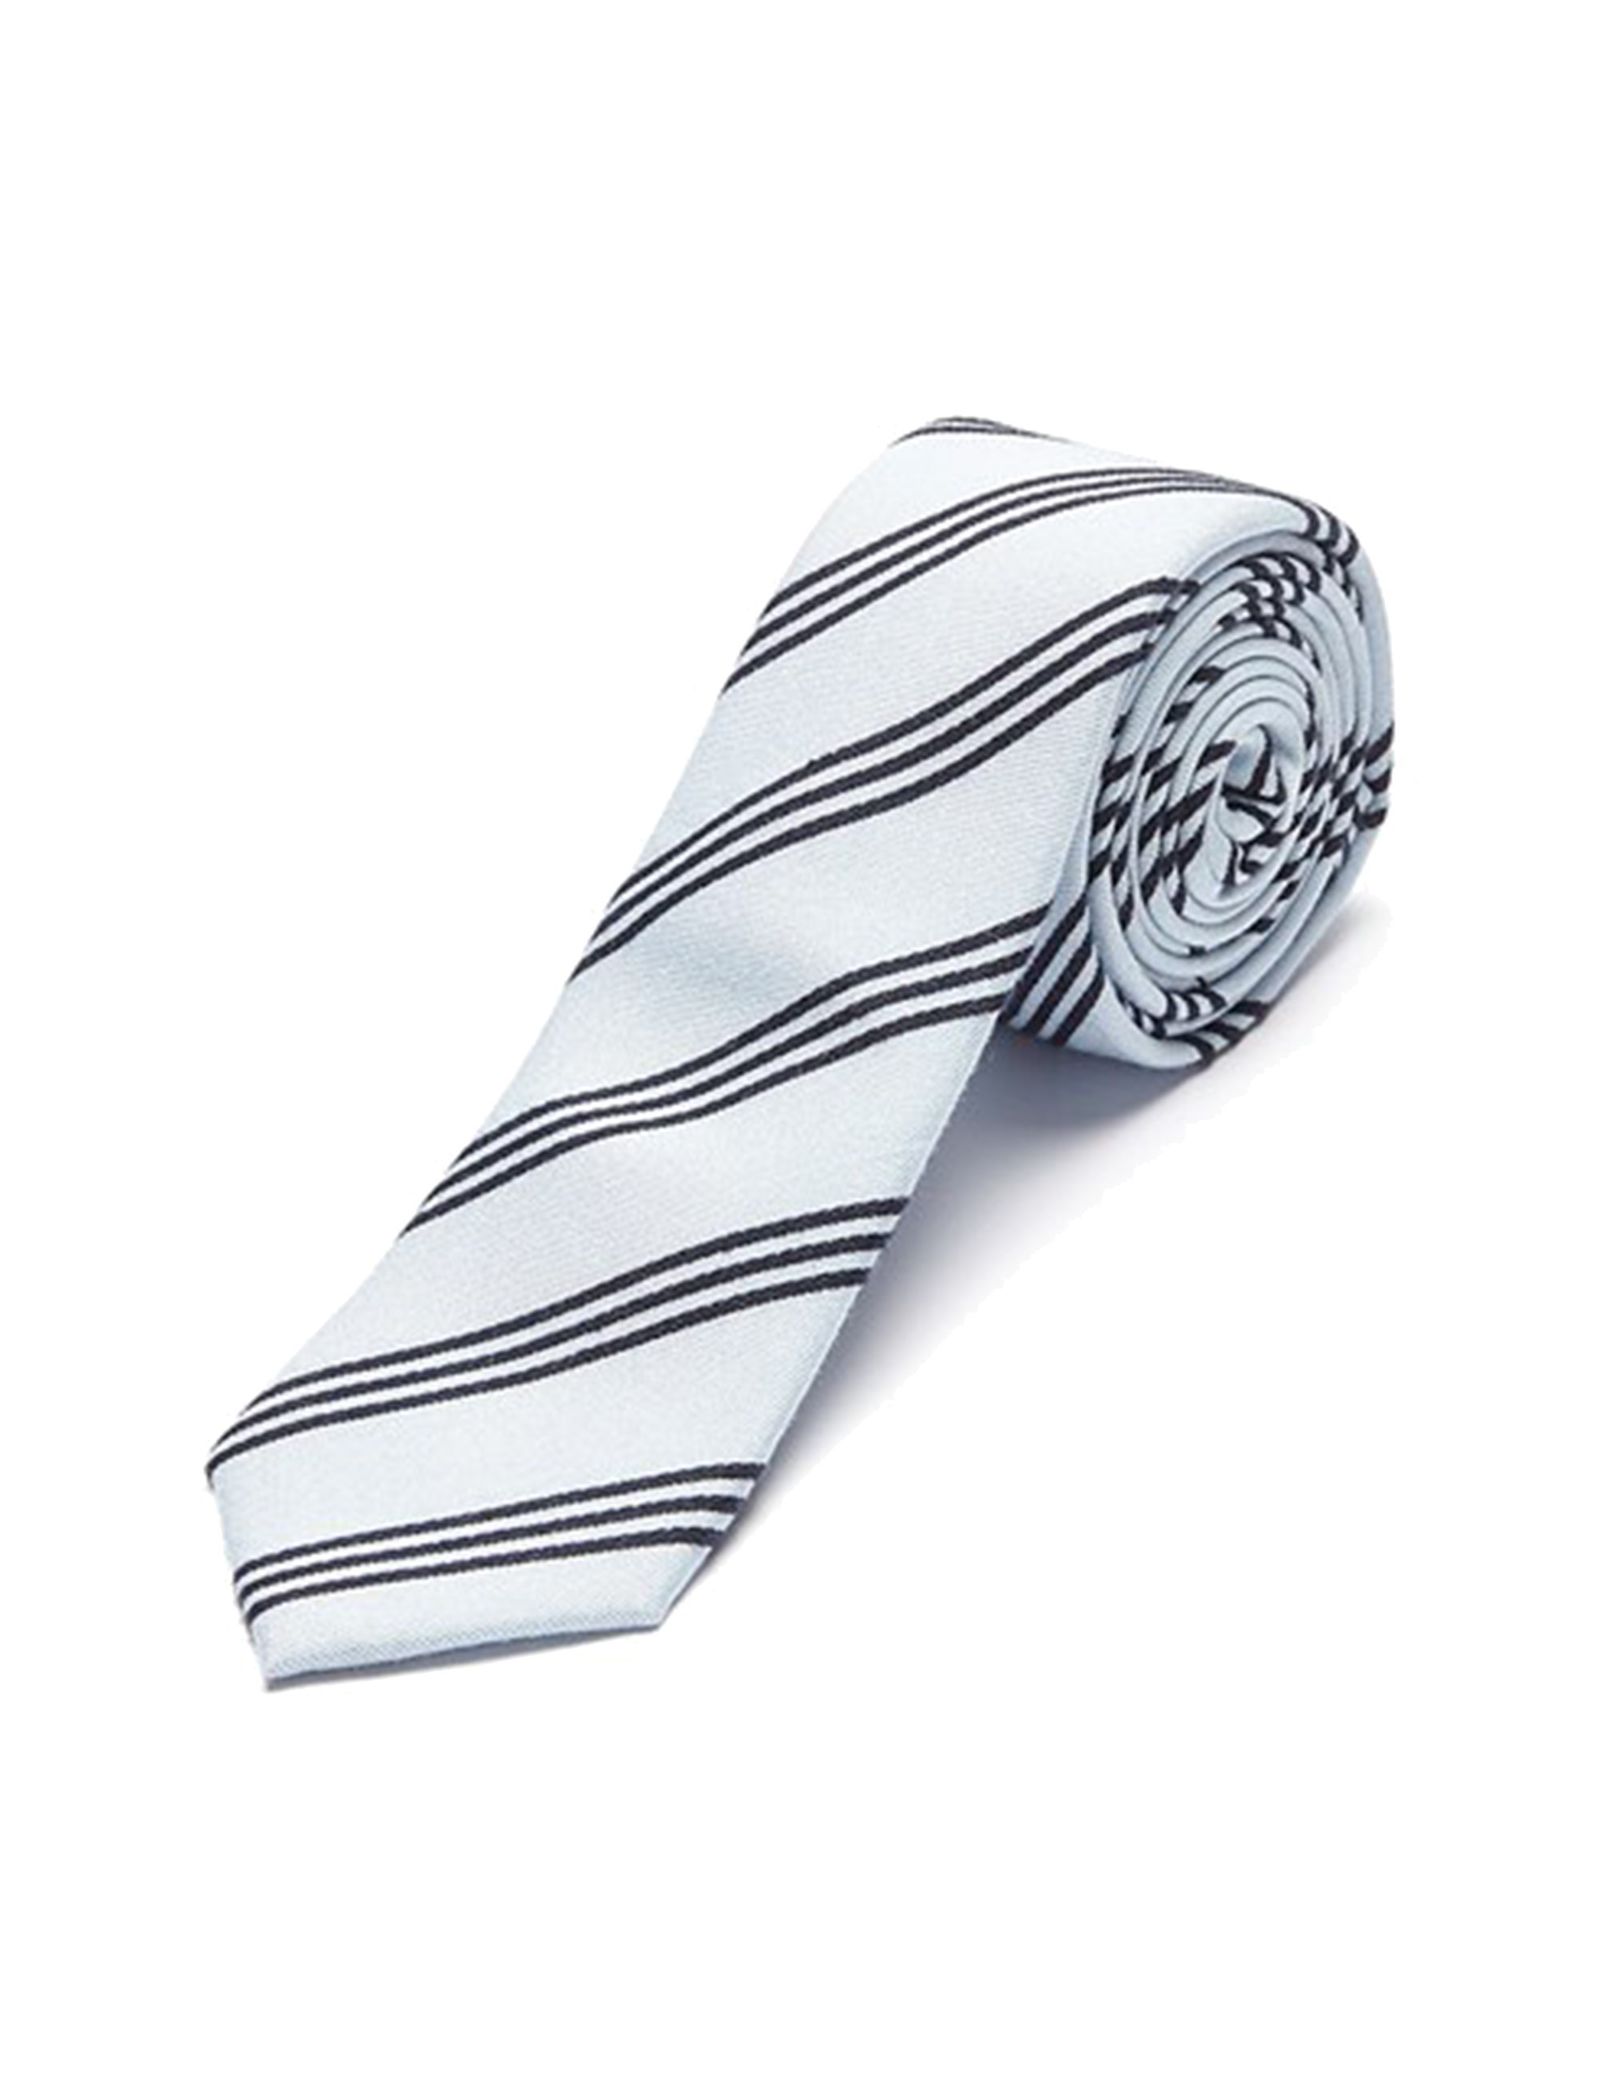 کراوات طرح دار مردانه - سلکتد - آبي روشن - 4